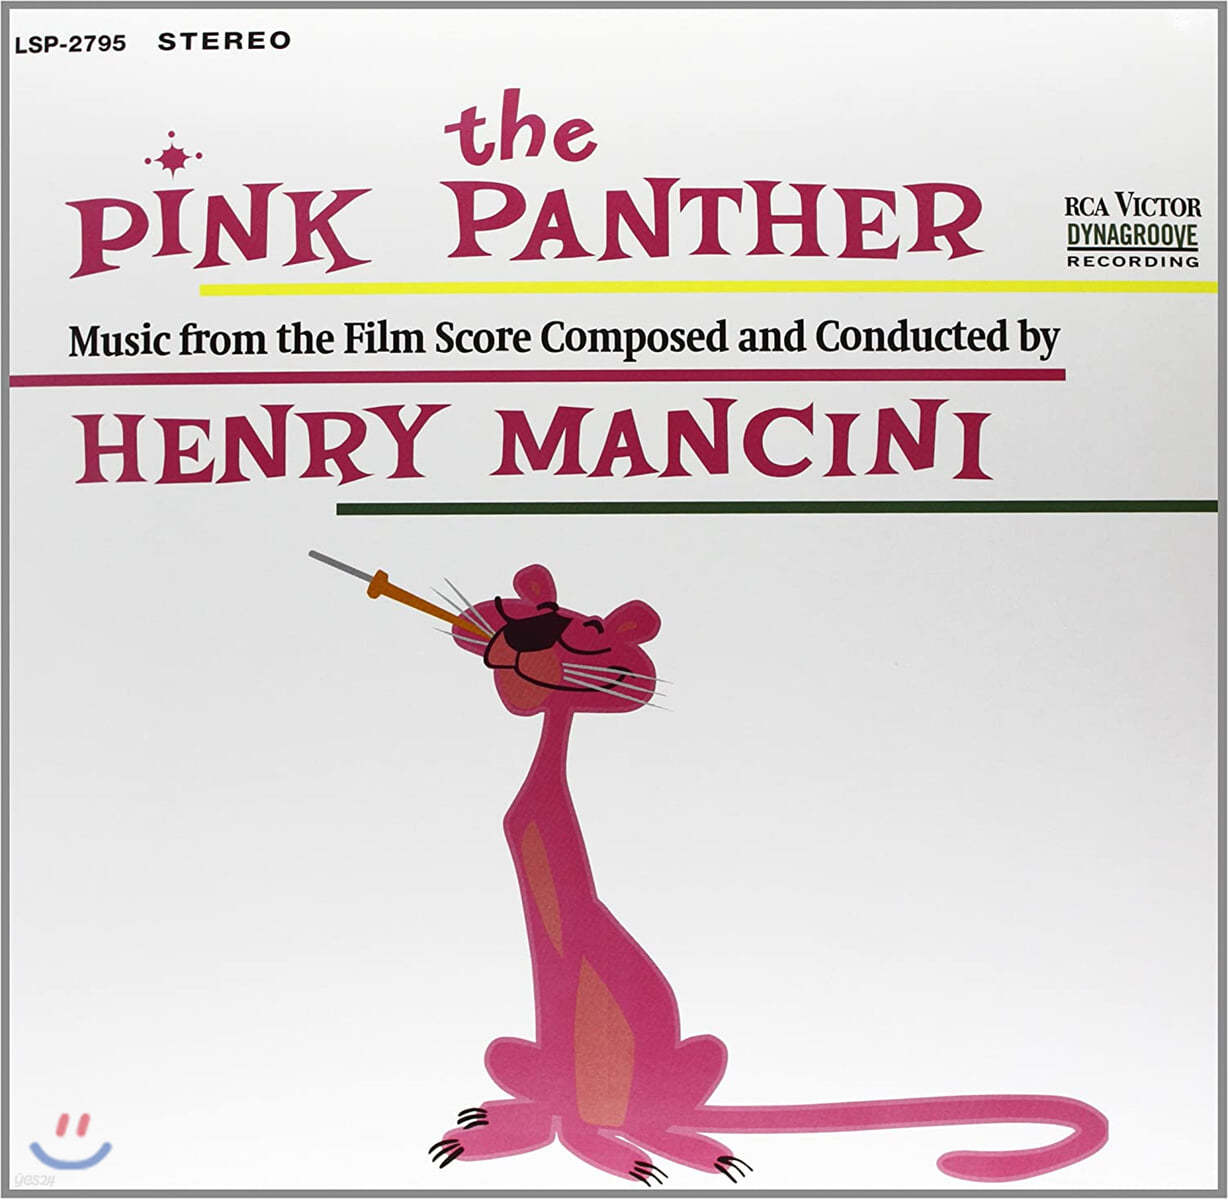 핑크 팬더 영화음악 (The Pink Panther OST by Henry Mancini) [LP]